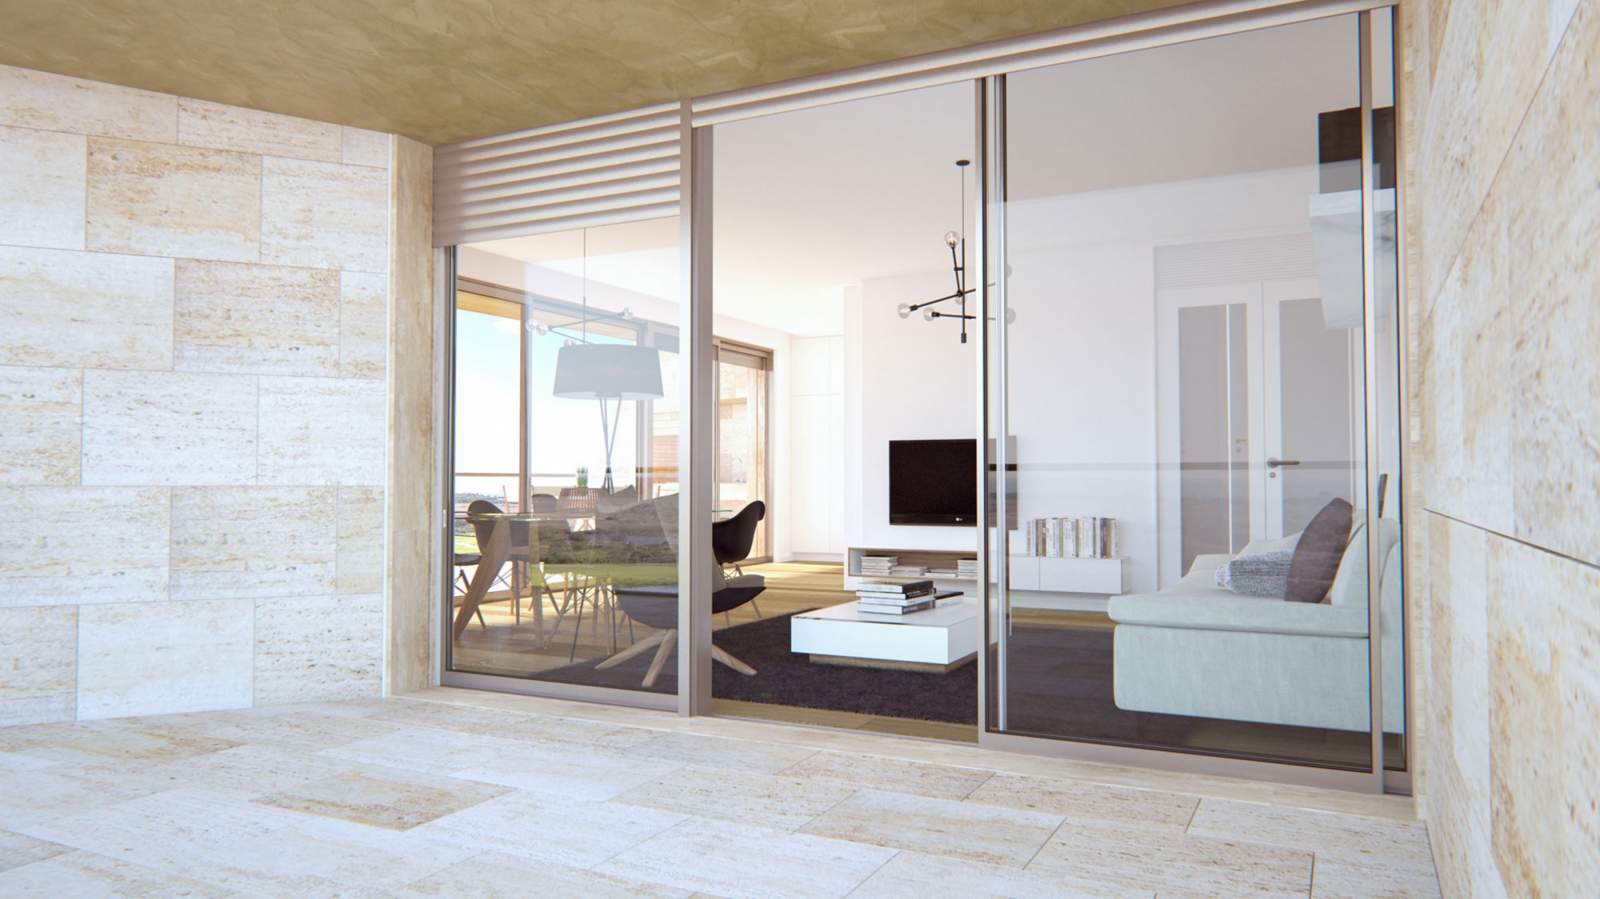 Appartement près de la mer à vendre à Vilamoura, Algarve, Portugal_112774